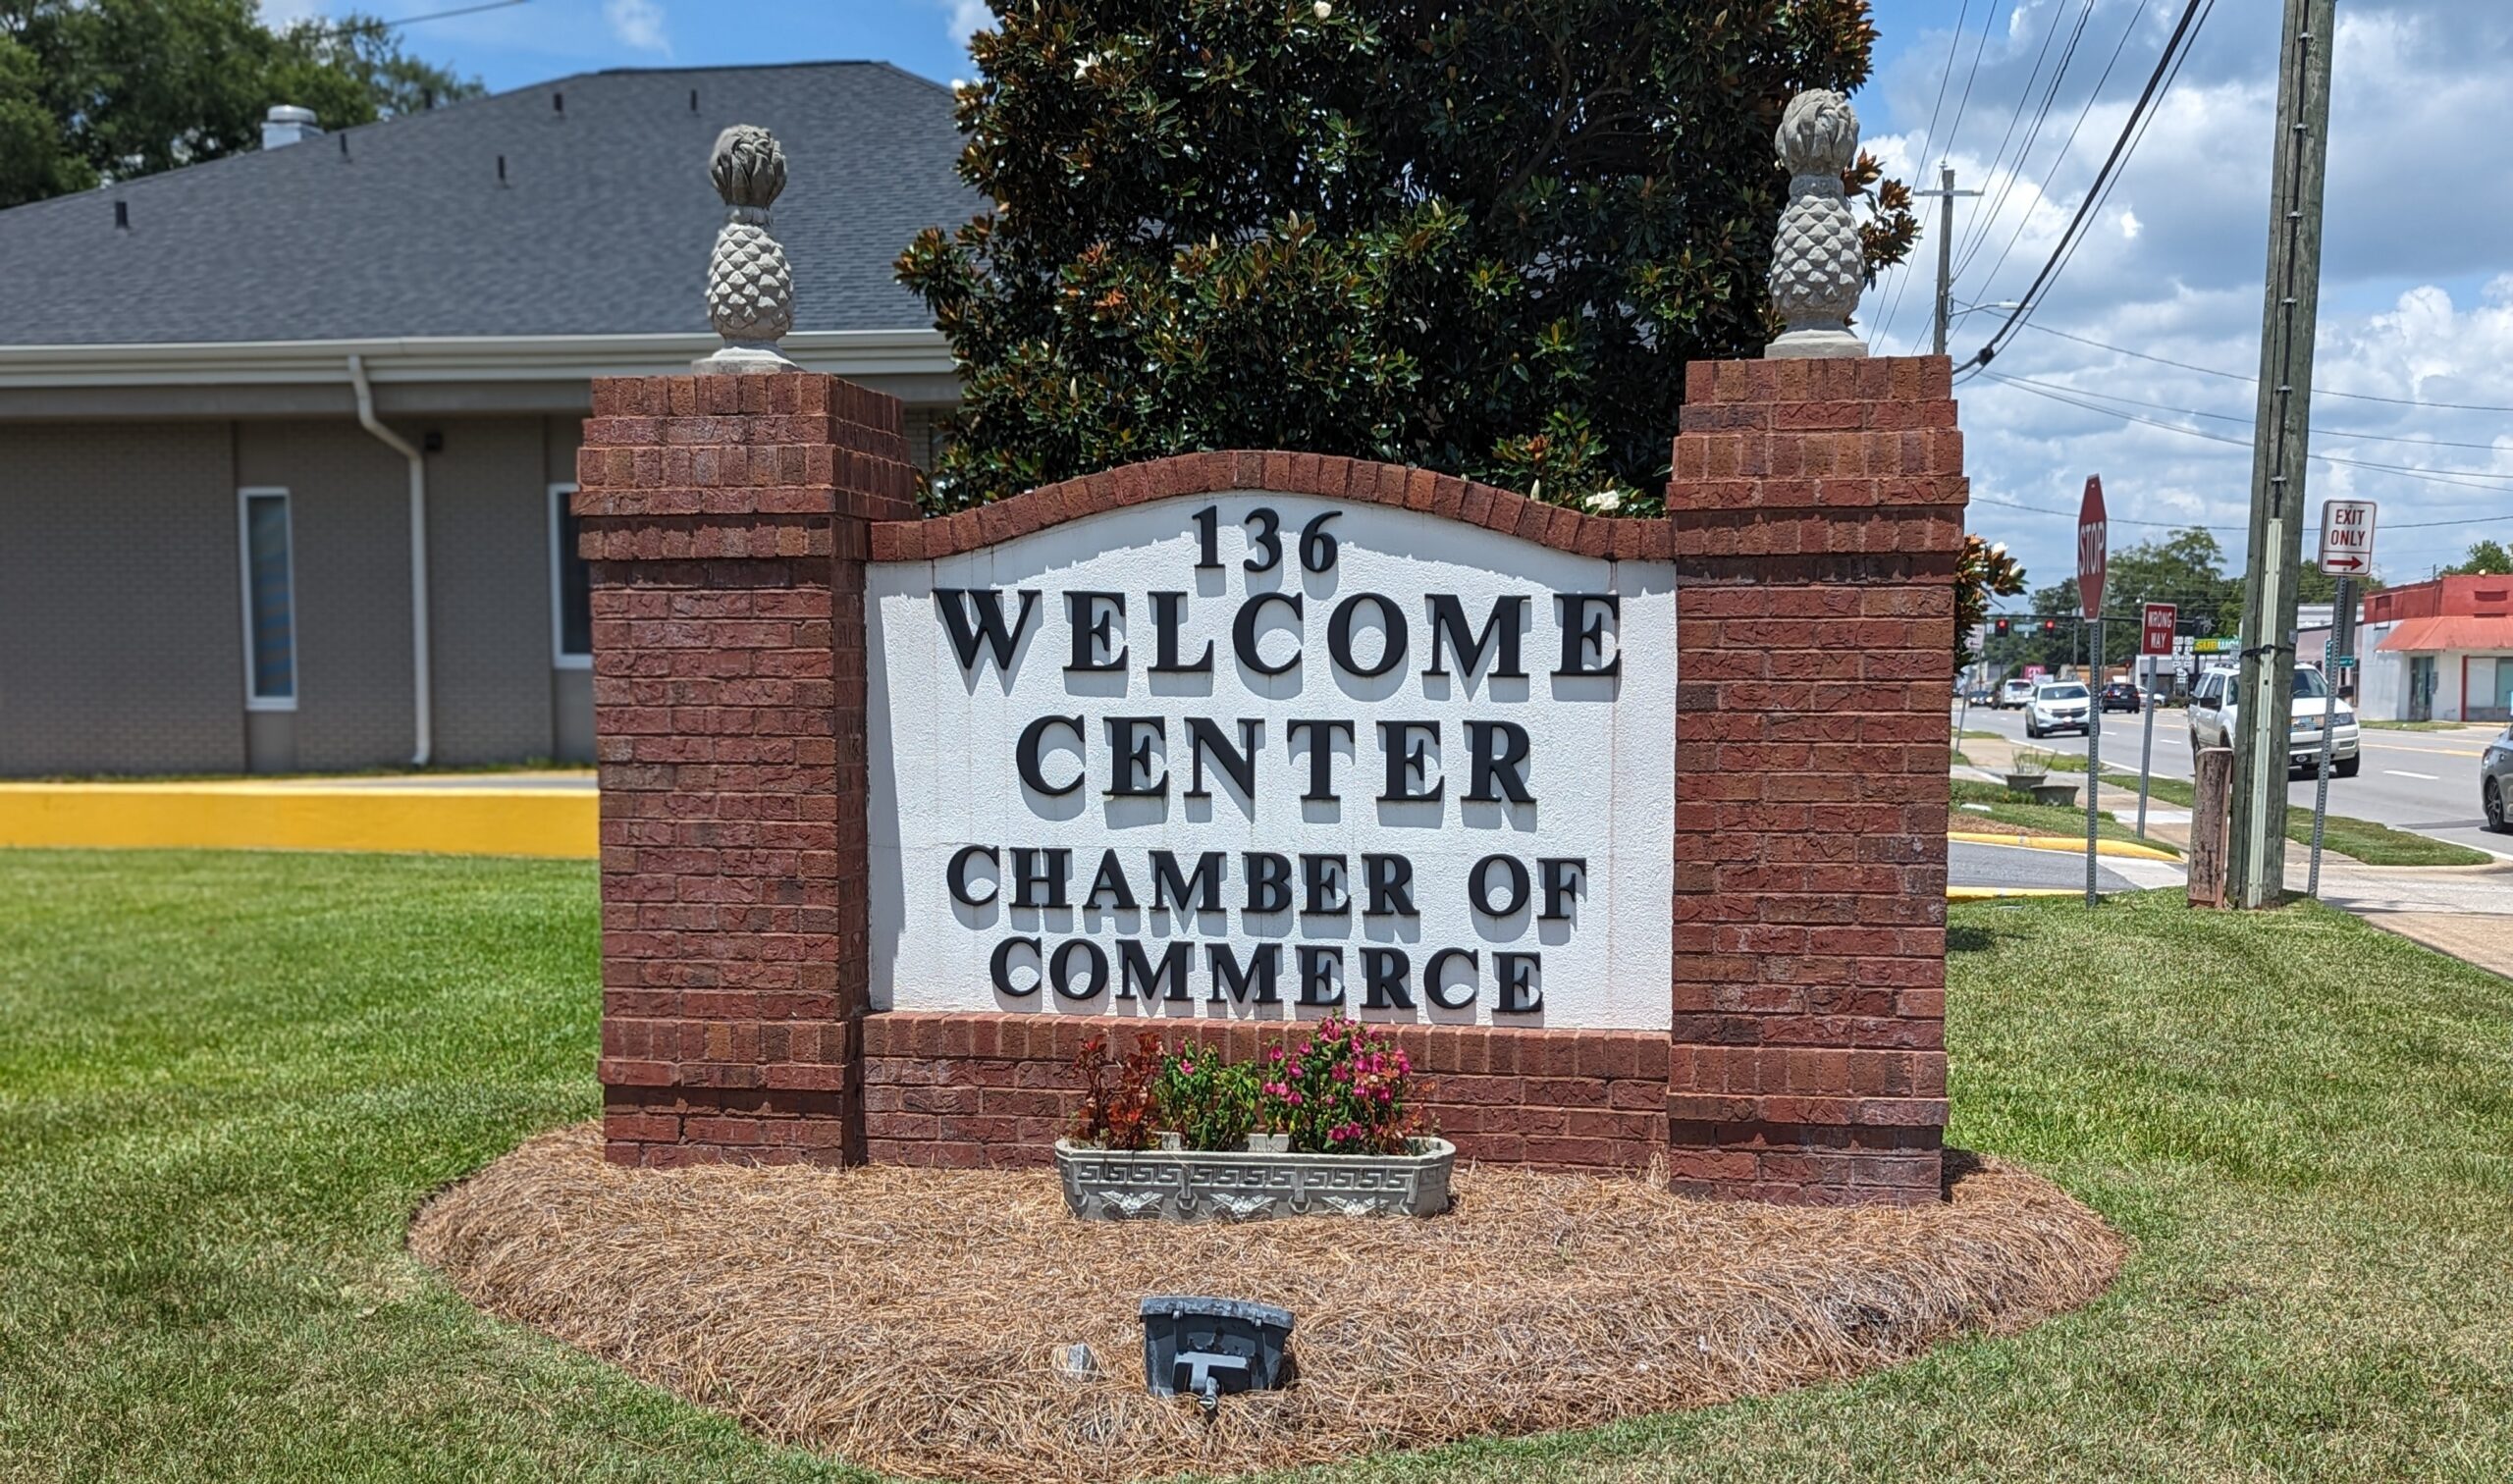 Chamber of Commerce sign in Glennville GA